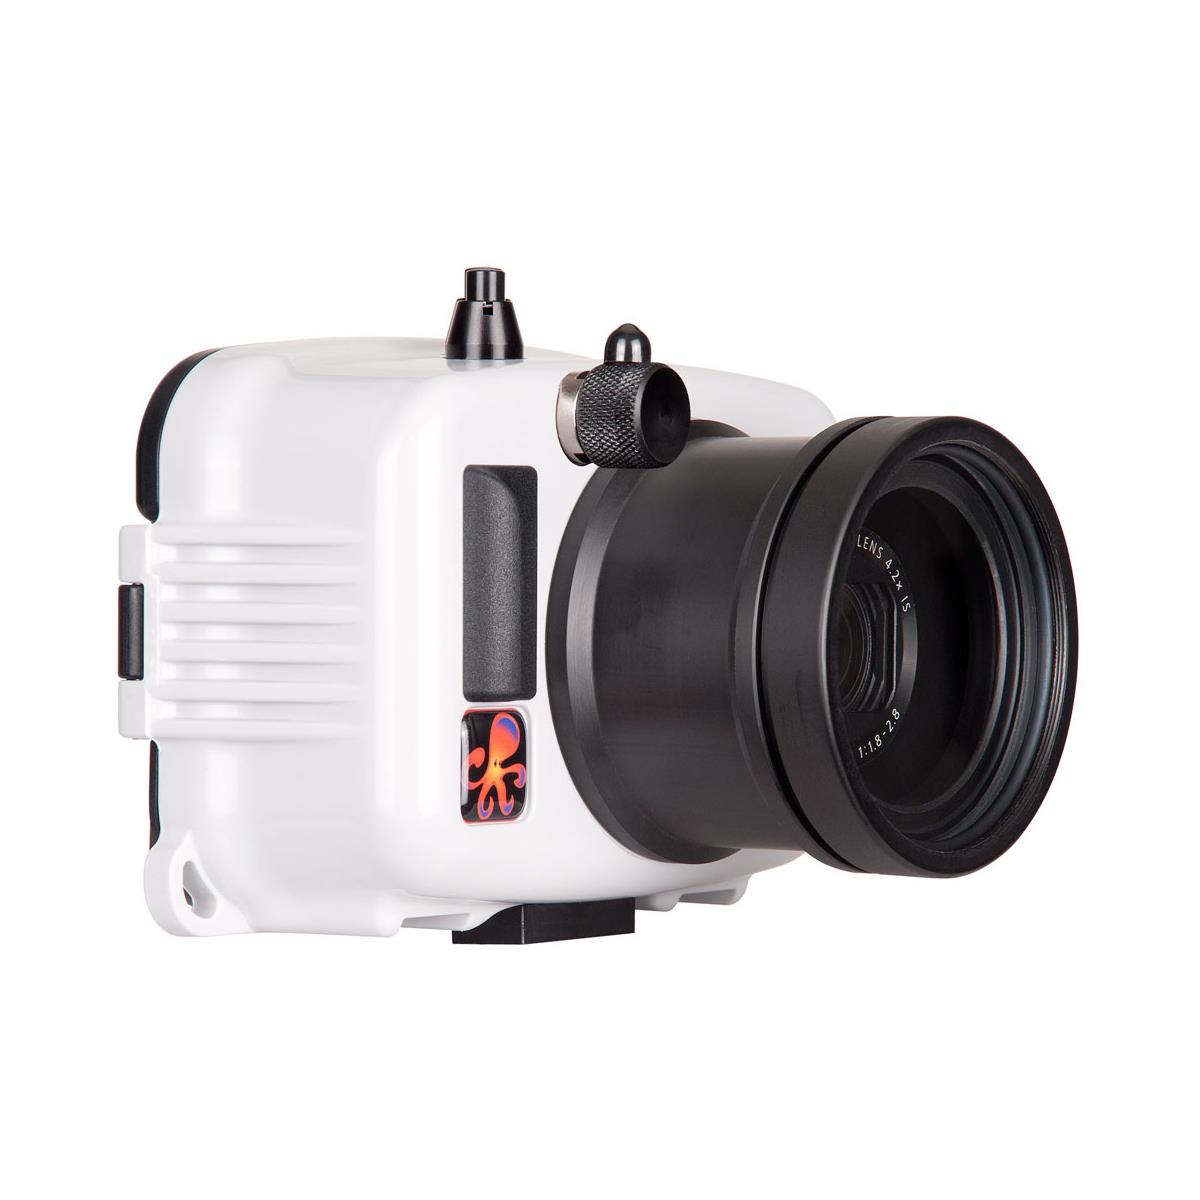 

Ikelite Underwater Action Housing for Canon PowerShot G7X Mark II X Camera